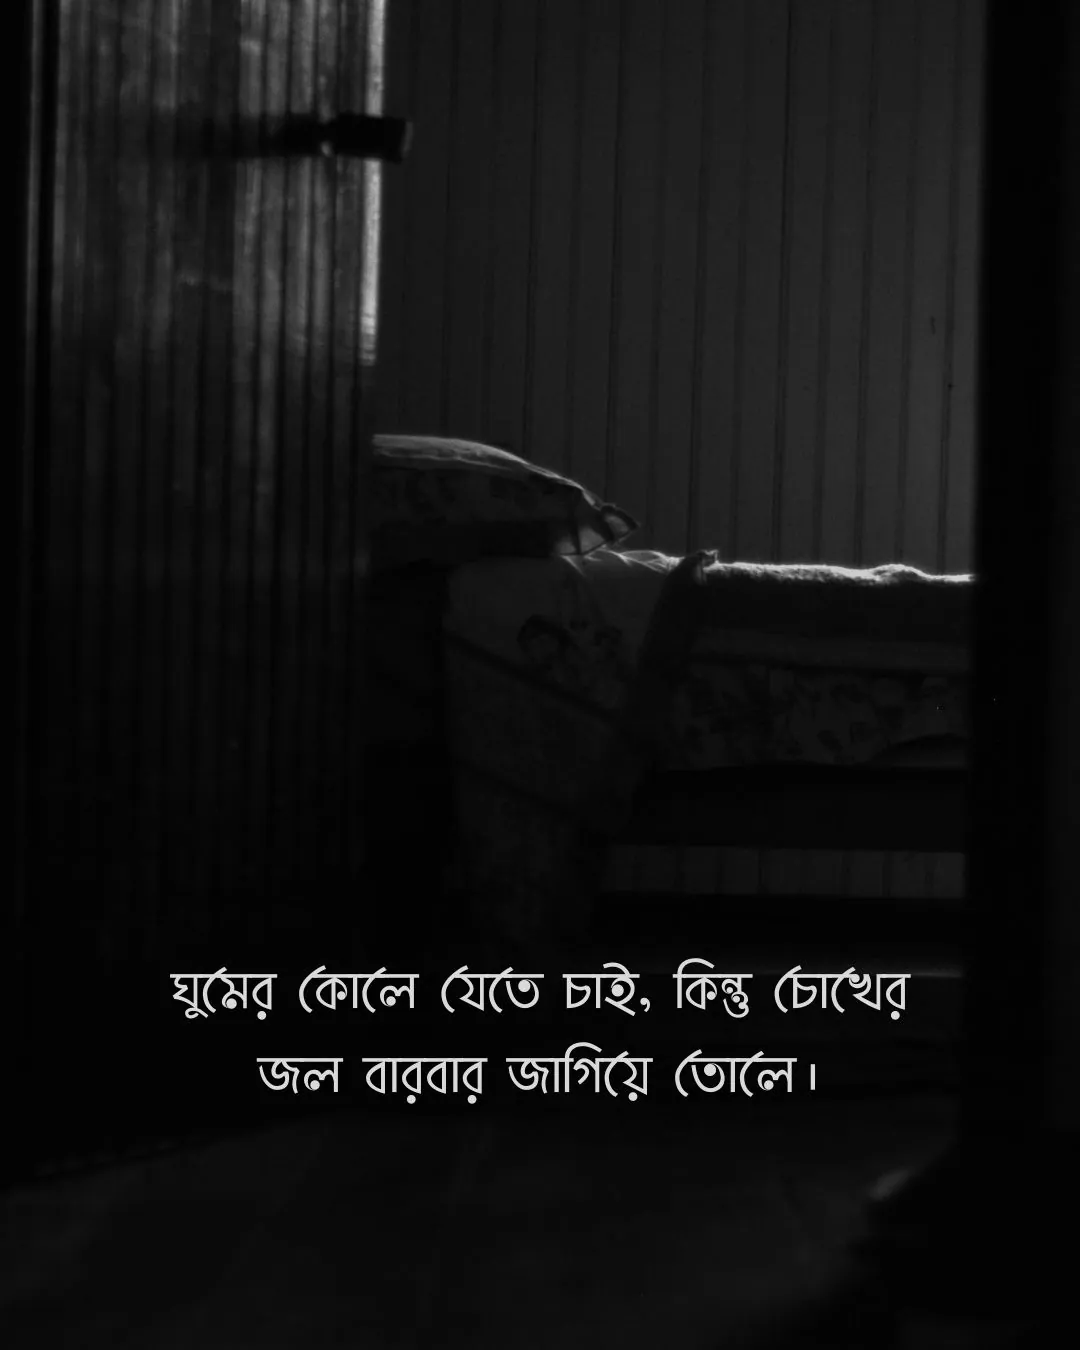 ঘুমের কোলে যেতে চাই কিন্তু চোখের জল বারবার জাগিয়ে তোলে - dark room sadness bangla